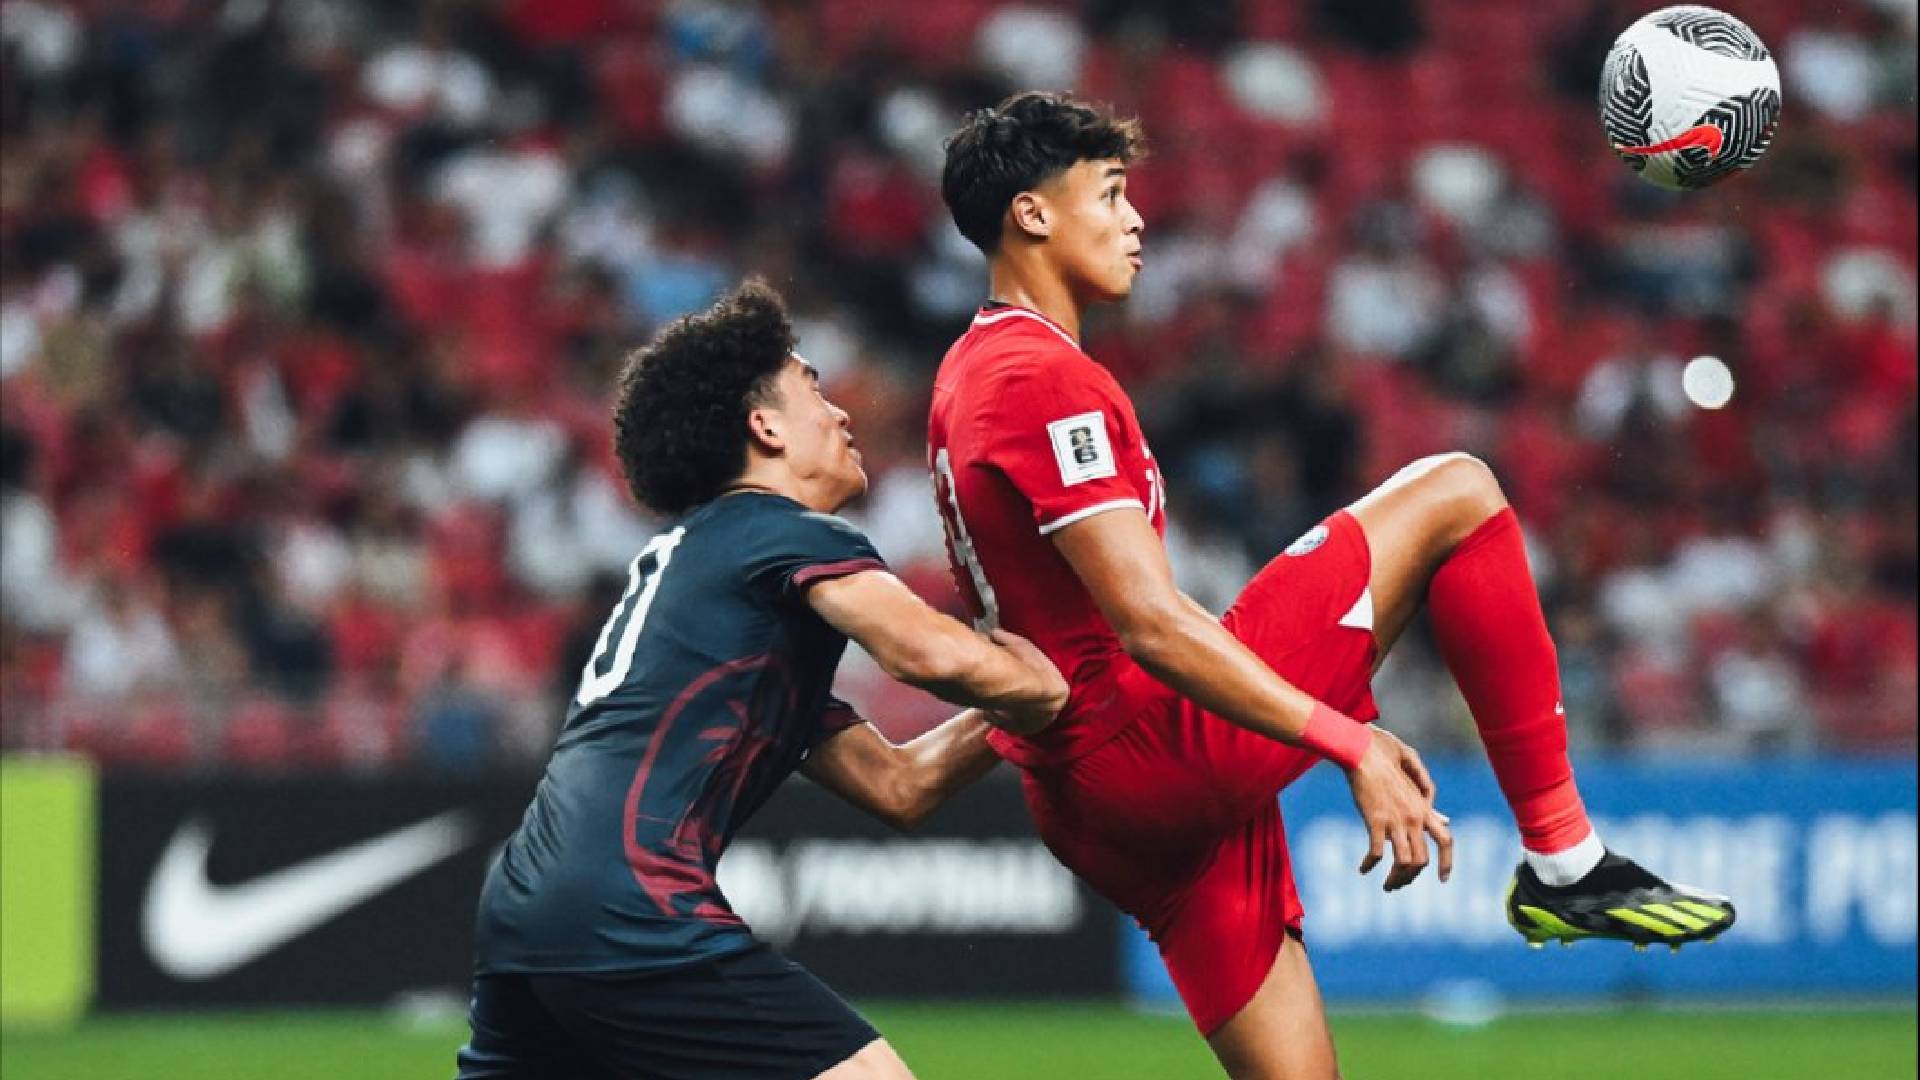 Ilhan Fandi Guam FA Singapore Ilhan Fandi: Jangan Risau, Saya Akan Kembali Jaringkan Gol